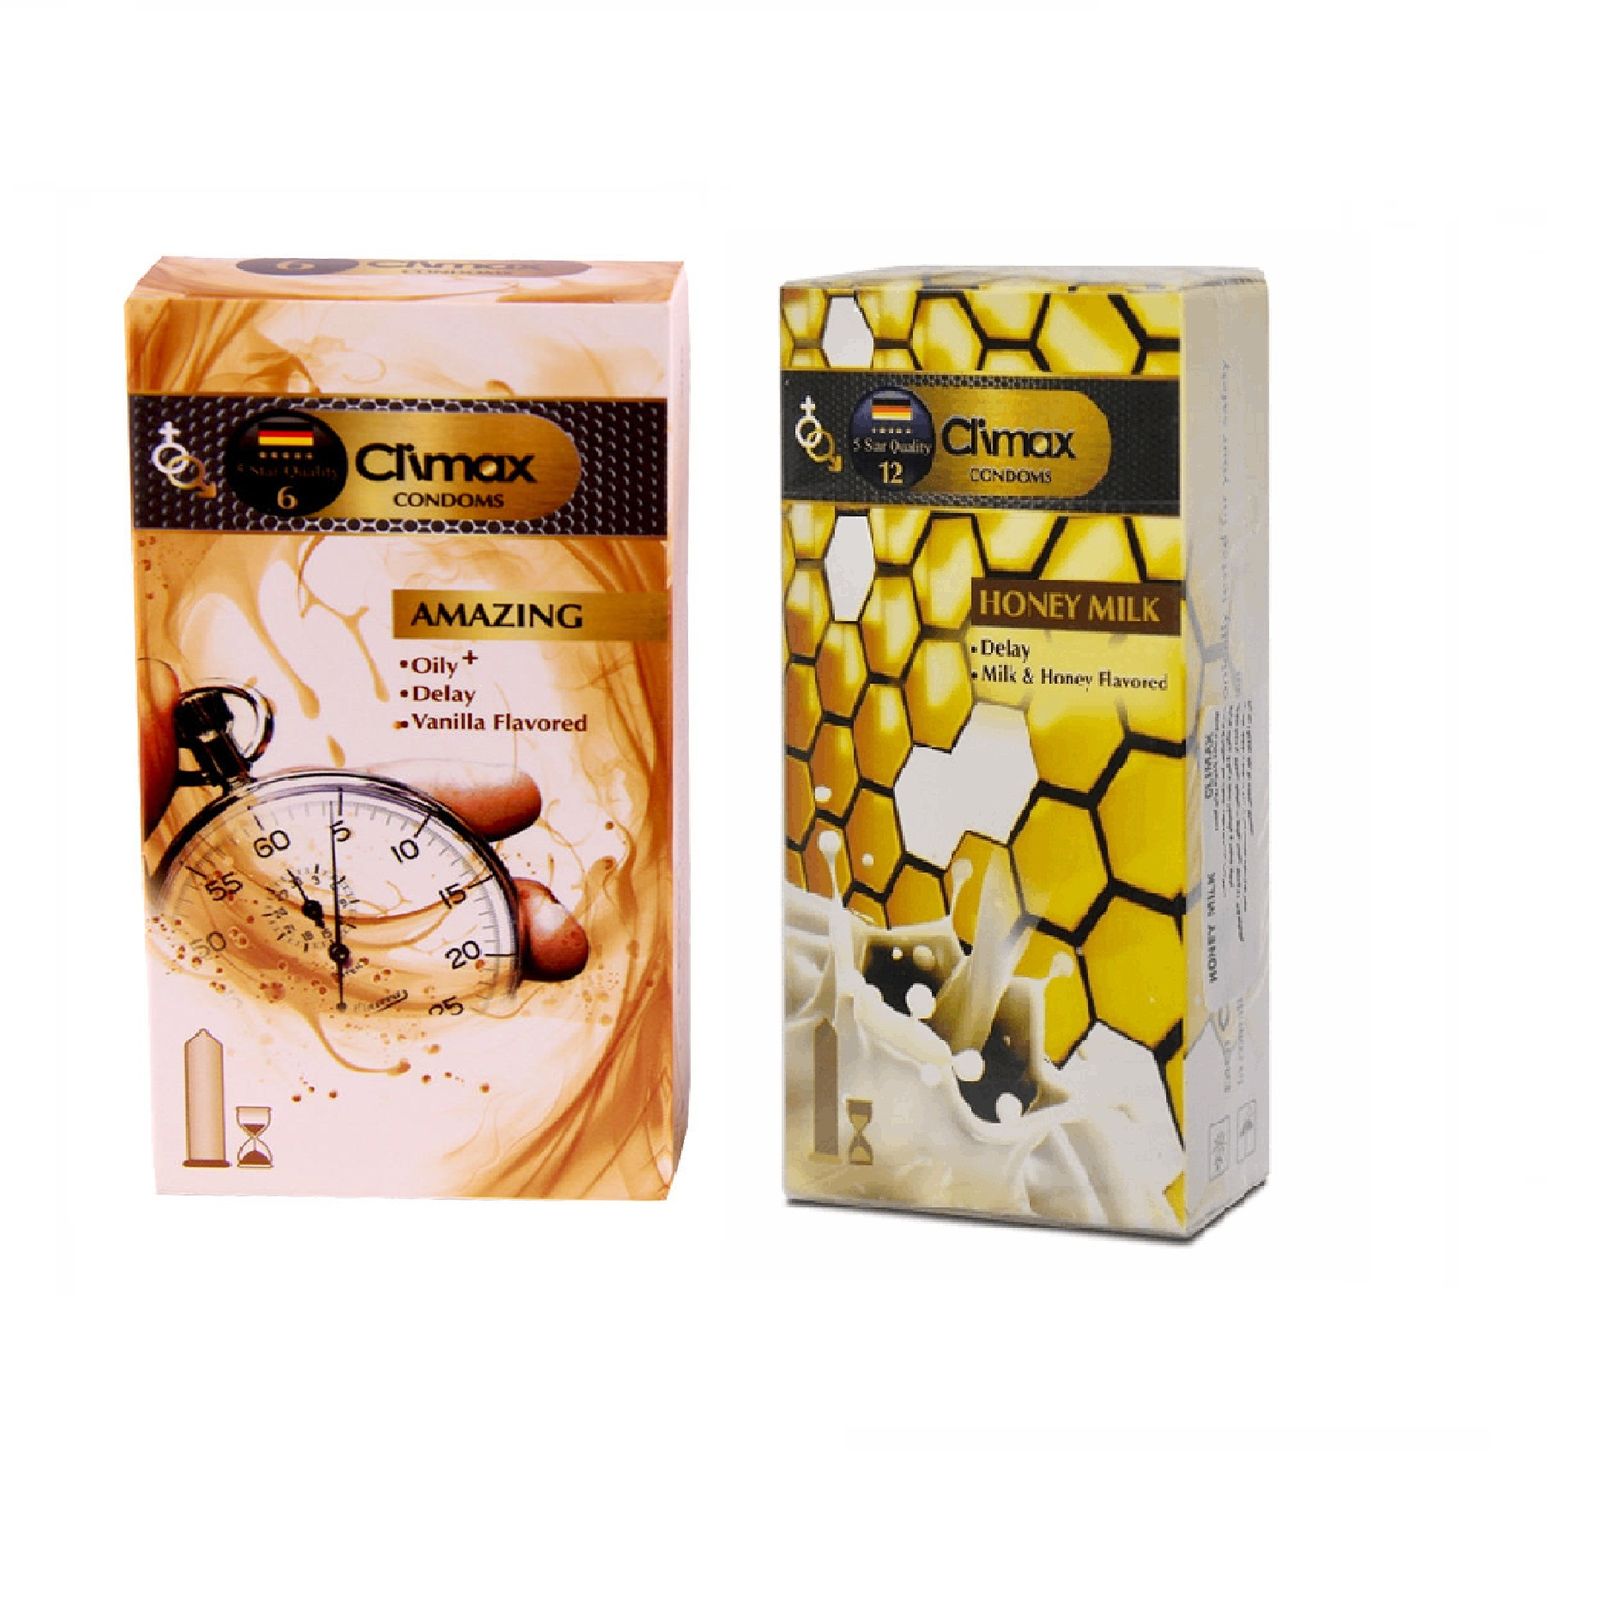 کاندوم کلایمکس مدل AMAZING بسته 12 عددی به همراه کاندوم کلایمکس مدل Honey Milk بسته 12 عددی -  - 1